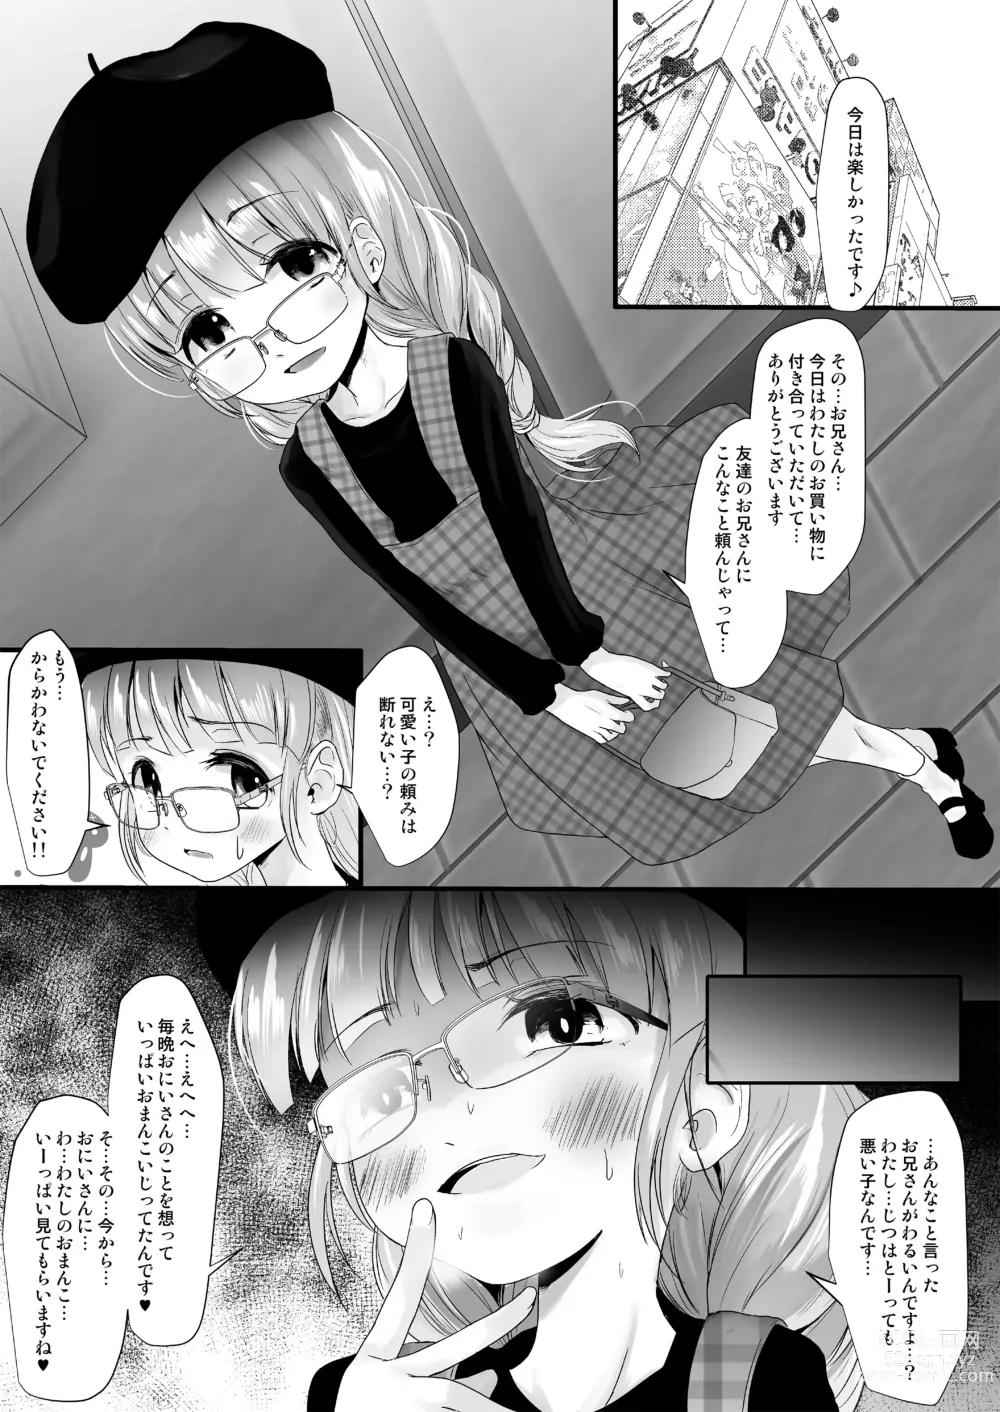 Page 4 of doujinshi Fanbox Matome vol 1